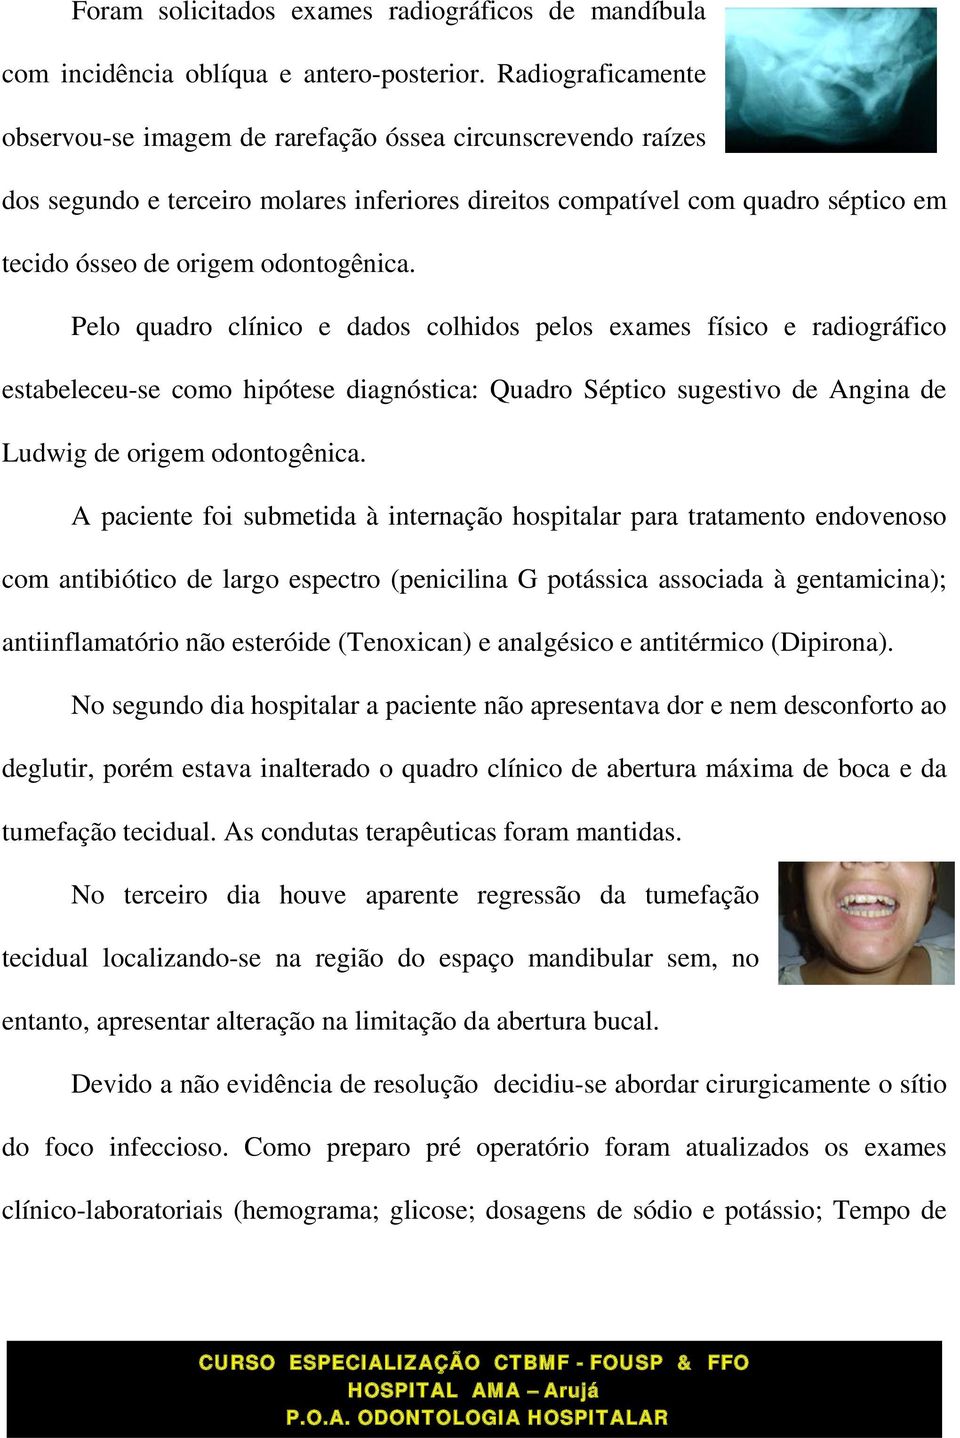 Pelo quadro clínico e dados colhidos pelos exames físico e radiográfico estabeleceu-se como hipótese diagnóstica: Quadro Séptico sugestivo de Angina de Ludwig de origem odontogênica.